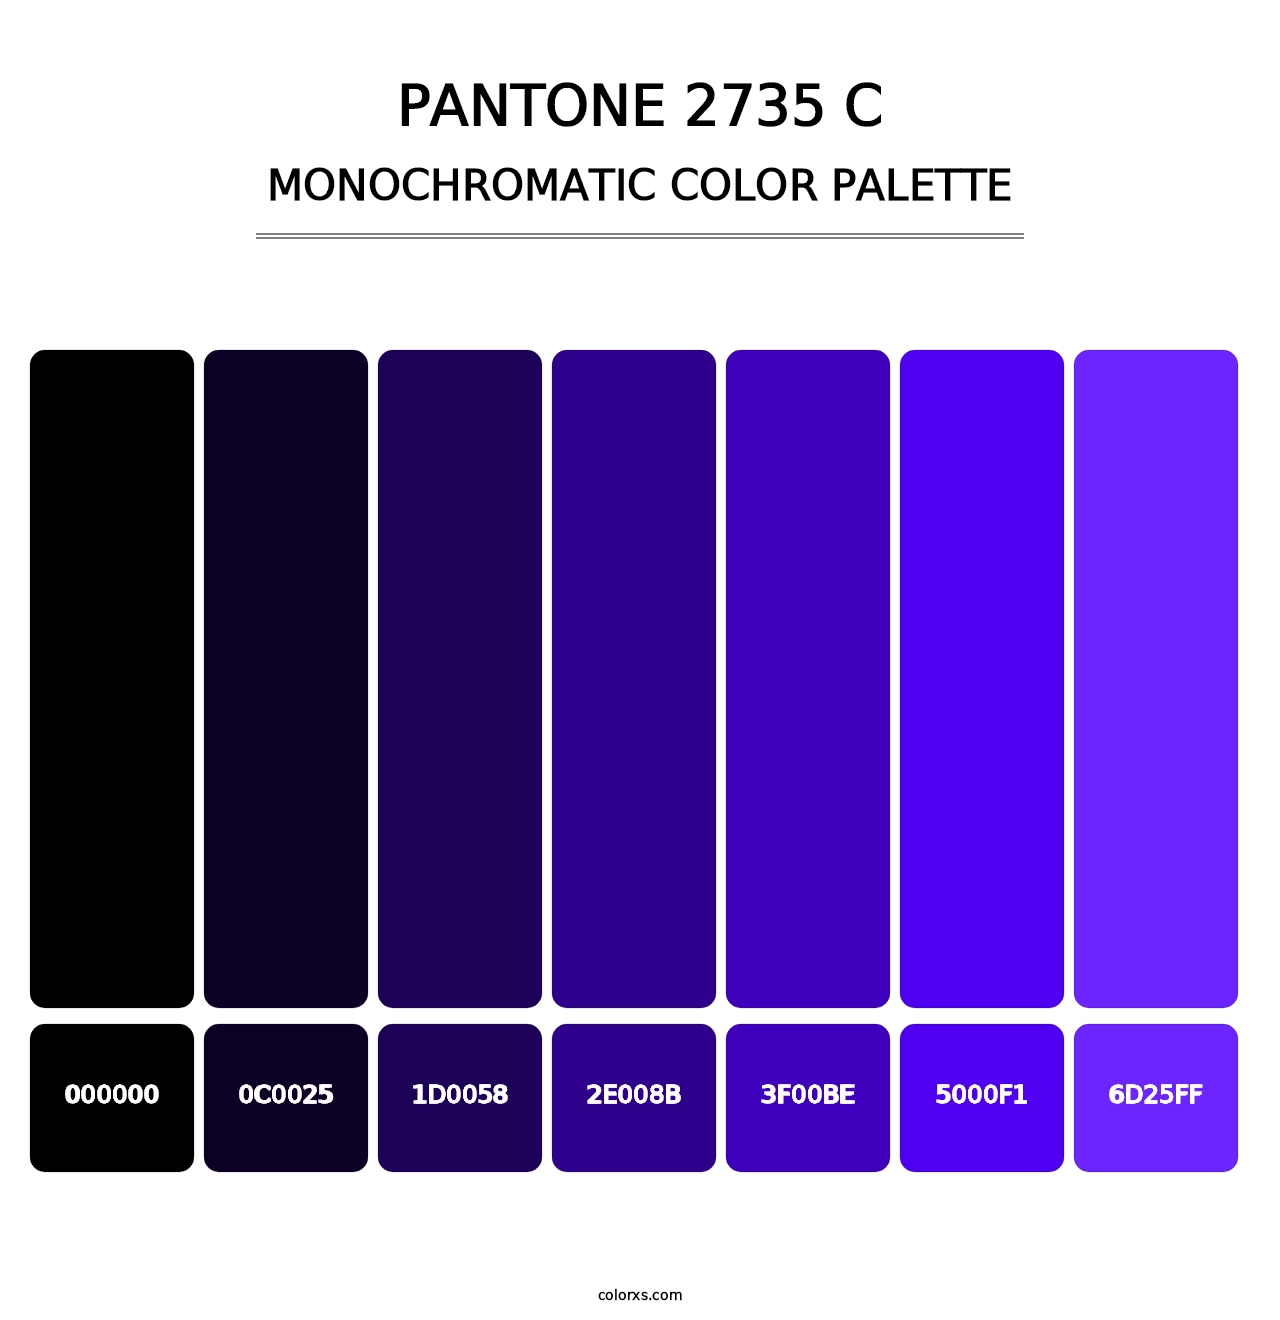 PANTONE 2735 C - Monochromatic Color Palette